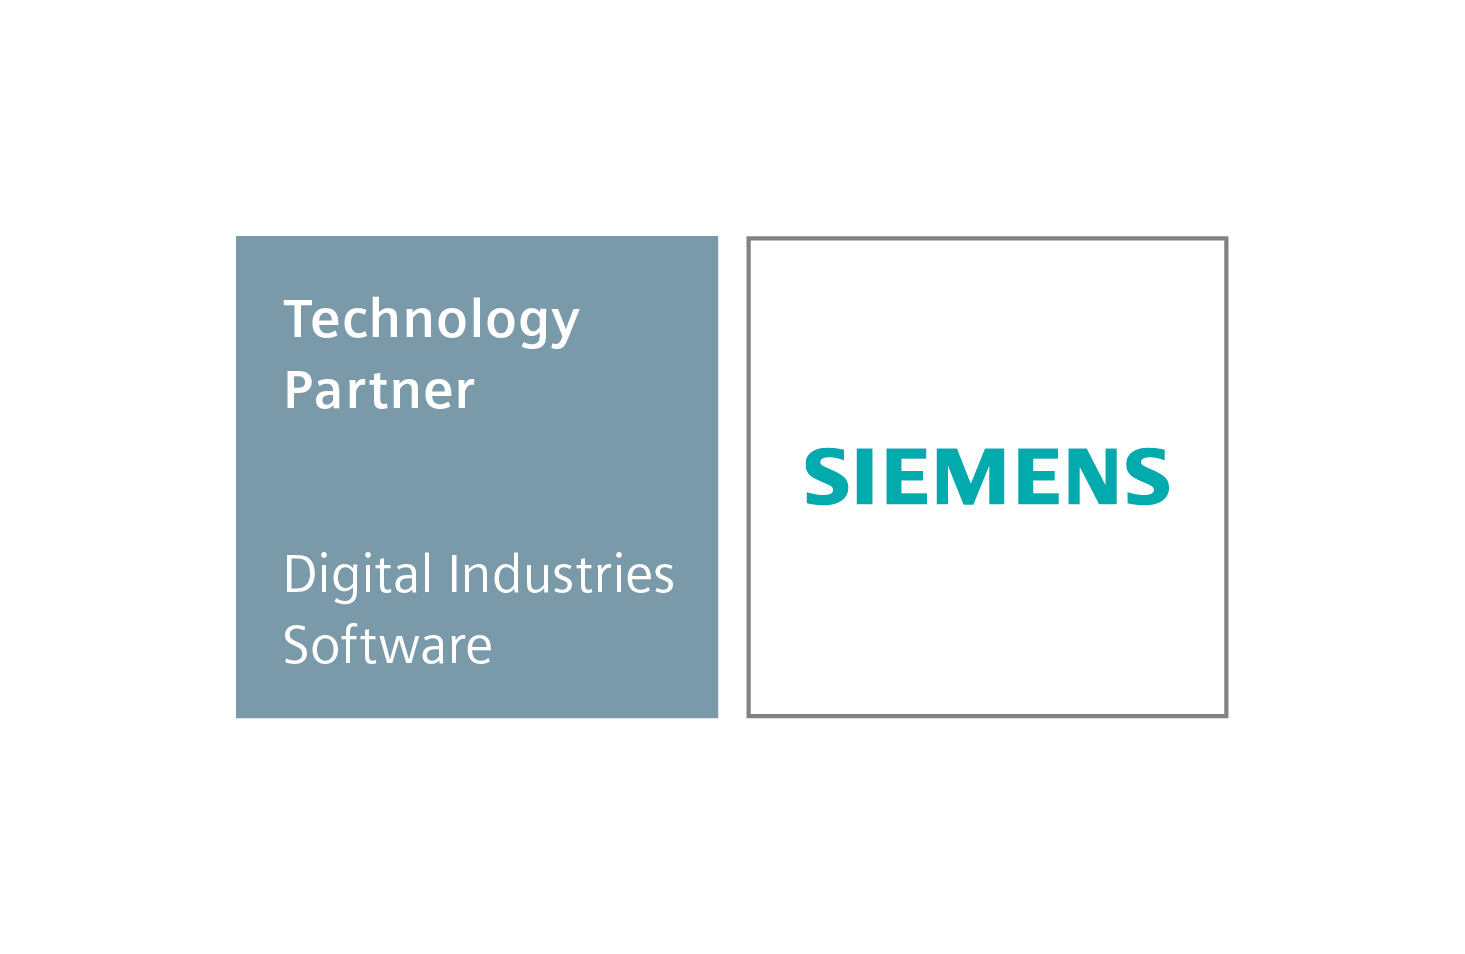 Siemens Solution Partner logo